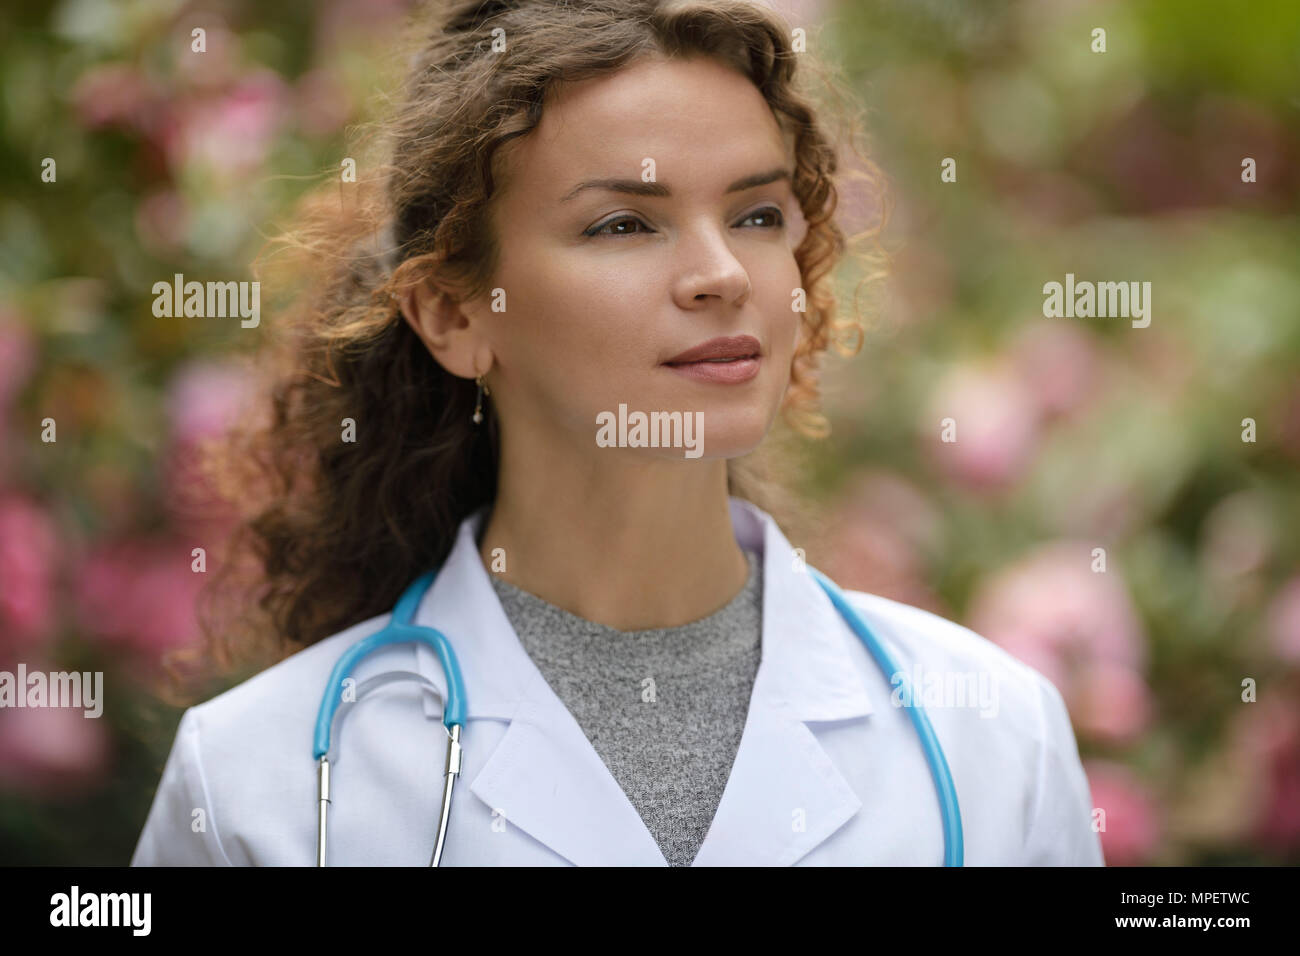 Porträt einer jungen Frau Doktor, Arzt mit einer angehenden nachdenklichen Blick, Karriere in der natürlichen Medizin, Gesundheitswesen als Arzt. Die wo Stockfoto